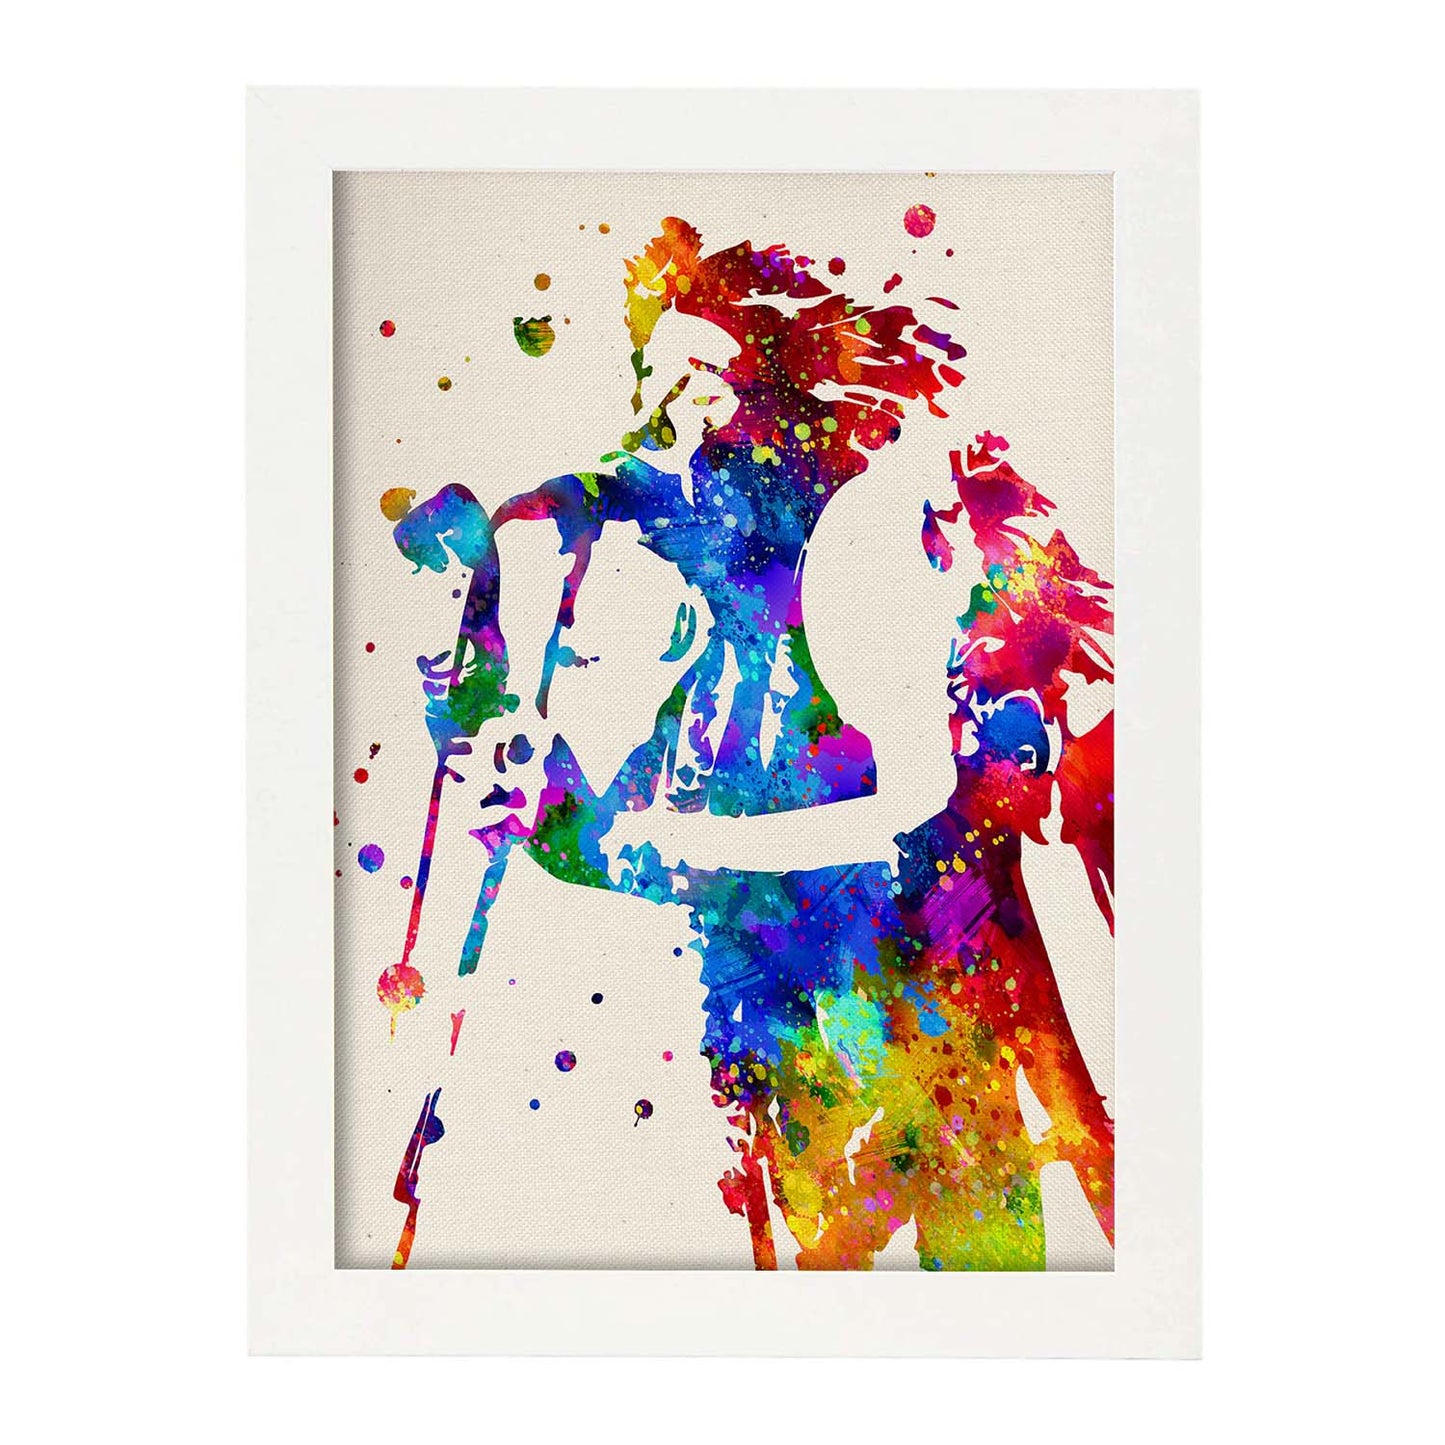 Poster imagen de Janis Joplin. Posters con diseño acuarela de famosos, actores, músicos-Artwork-Nacnic-A4-Marco Blanco-Nacnic Estudio SL